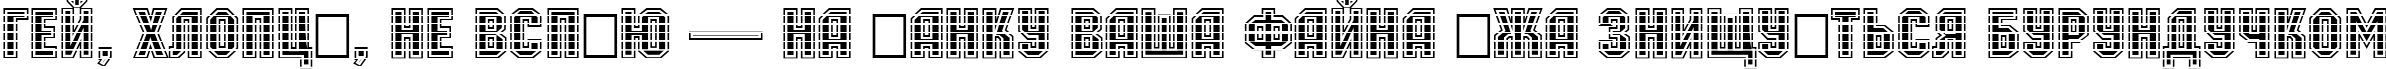 Пример написания шрифтом a_MachinaOrtoMltGr Bold текста на украинском